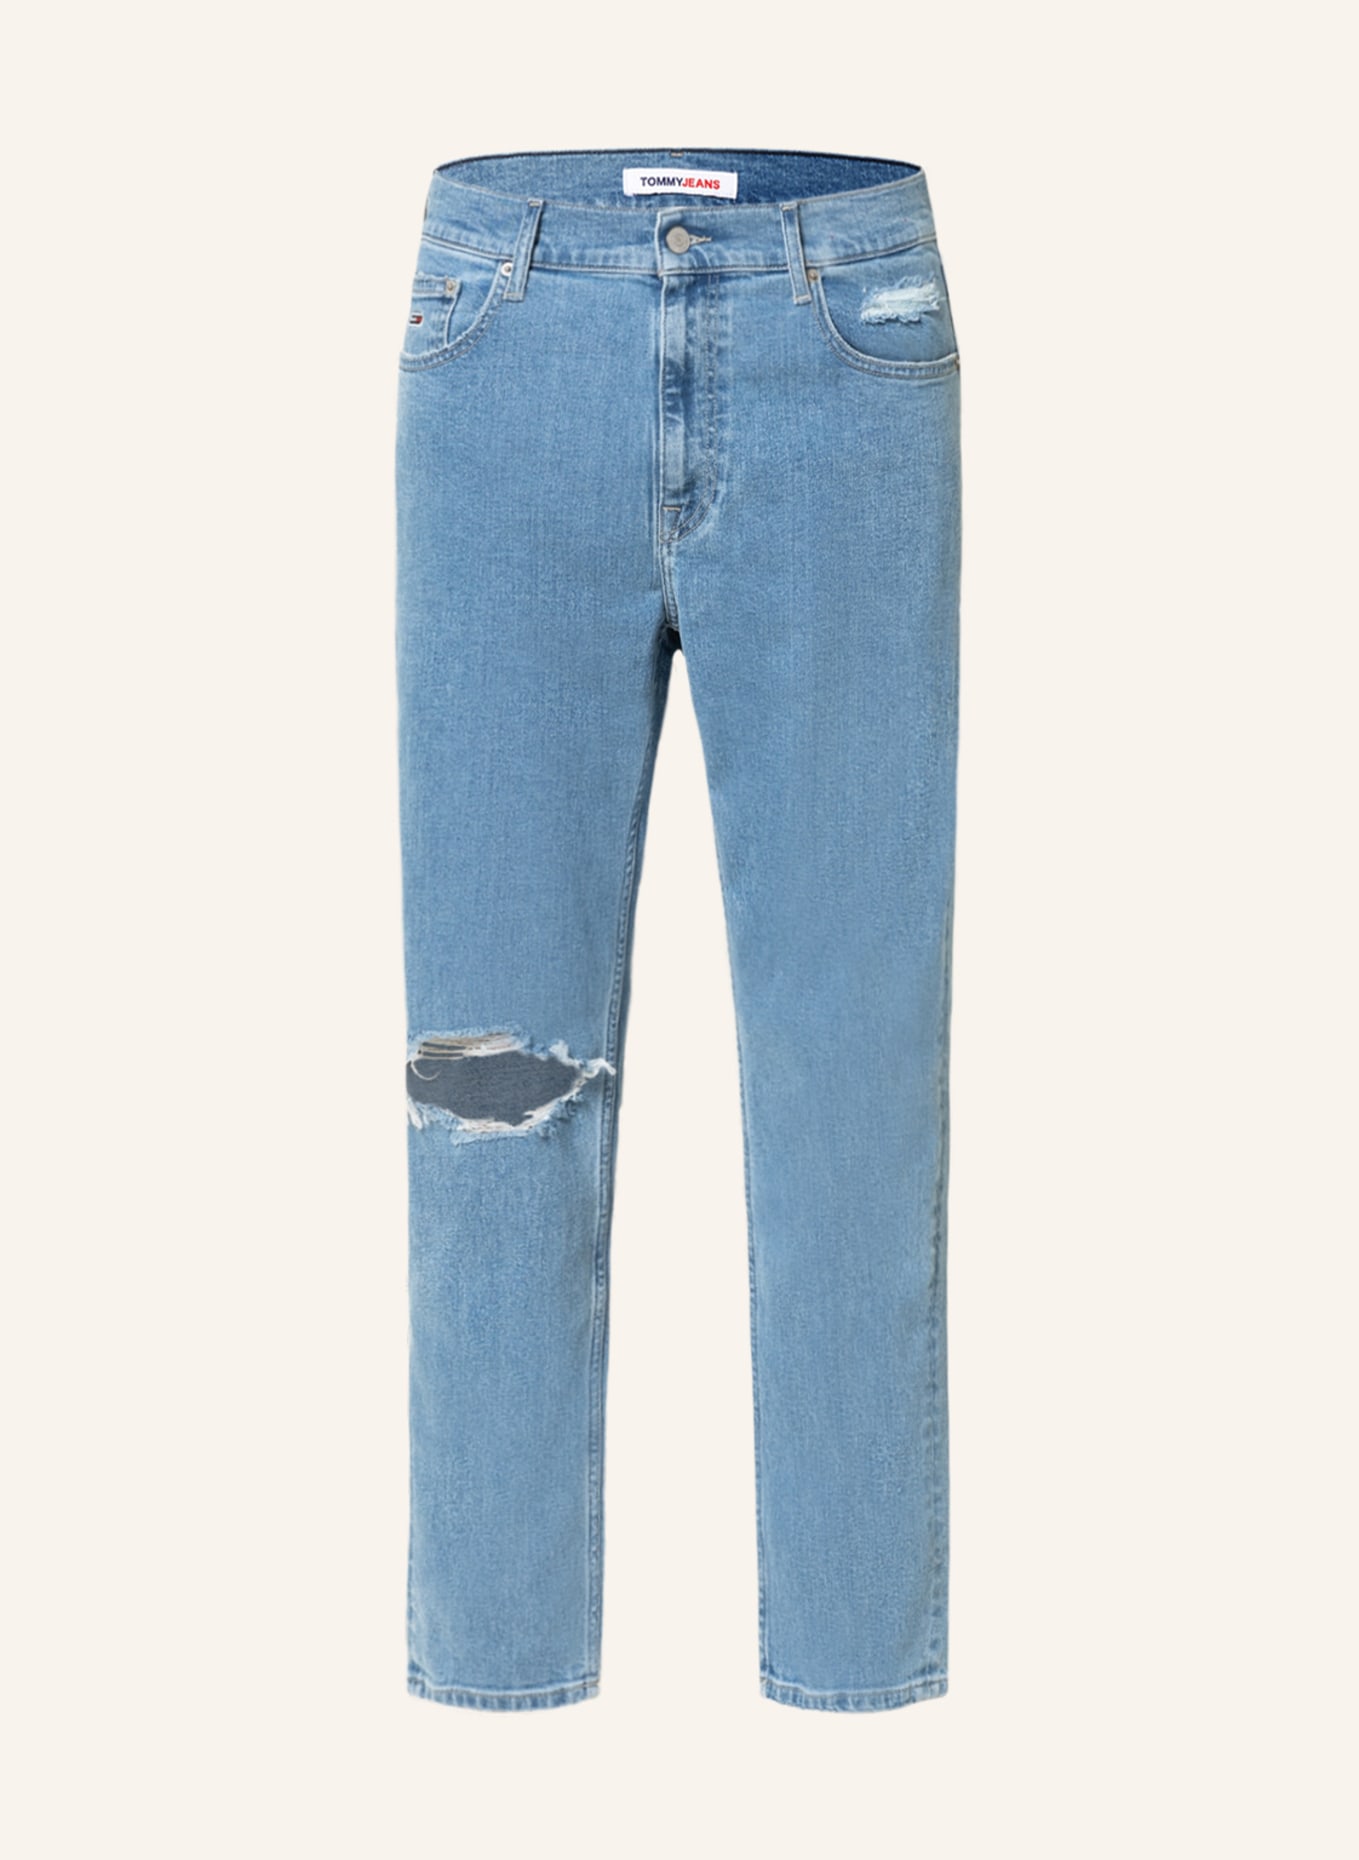 TOMMY JEANS Destroyed jeans DAD JEAN regular tapered fit , Color: 1AB Denim Light (Image 1)